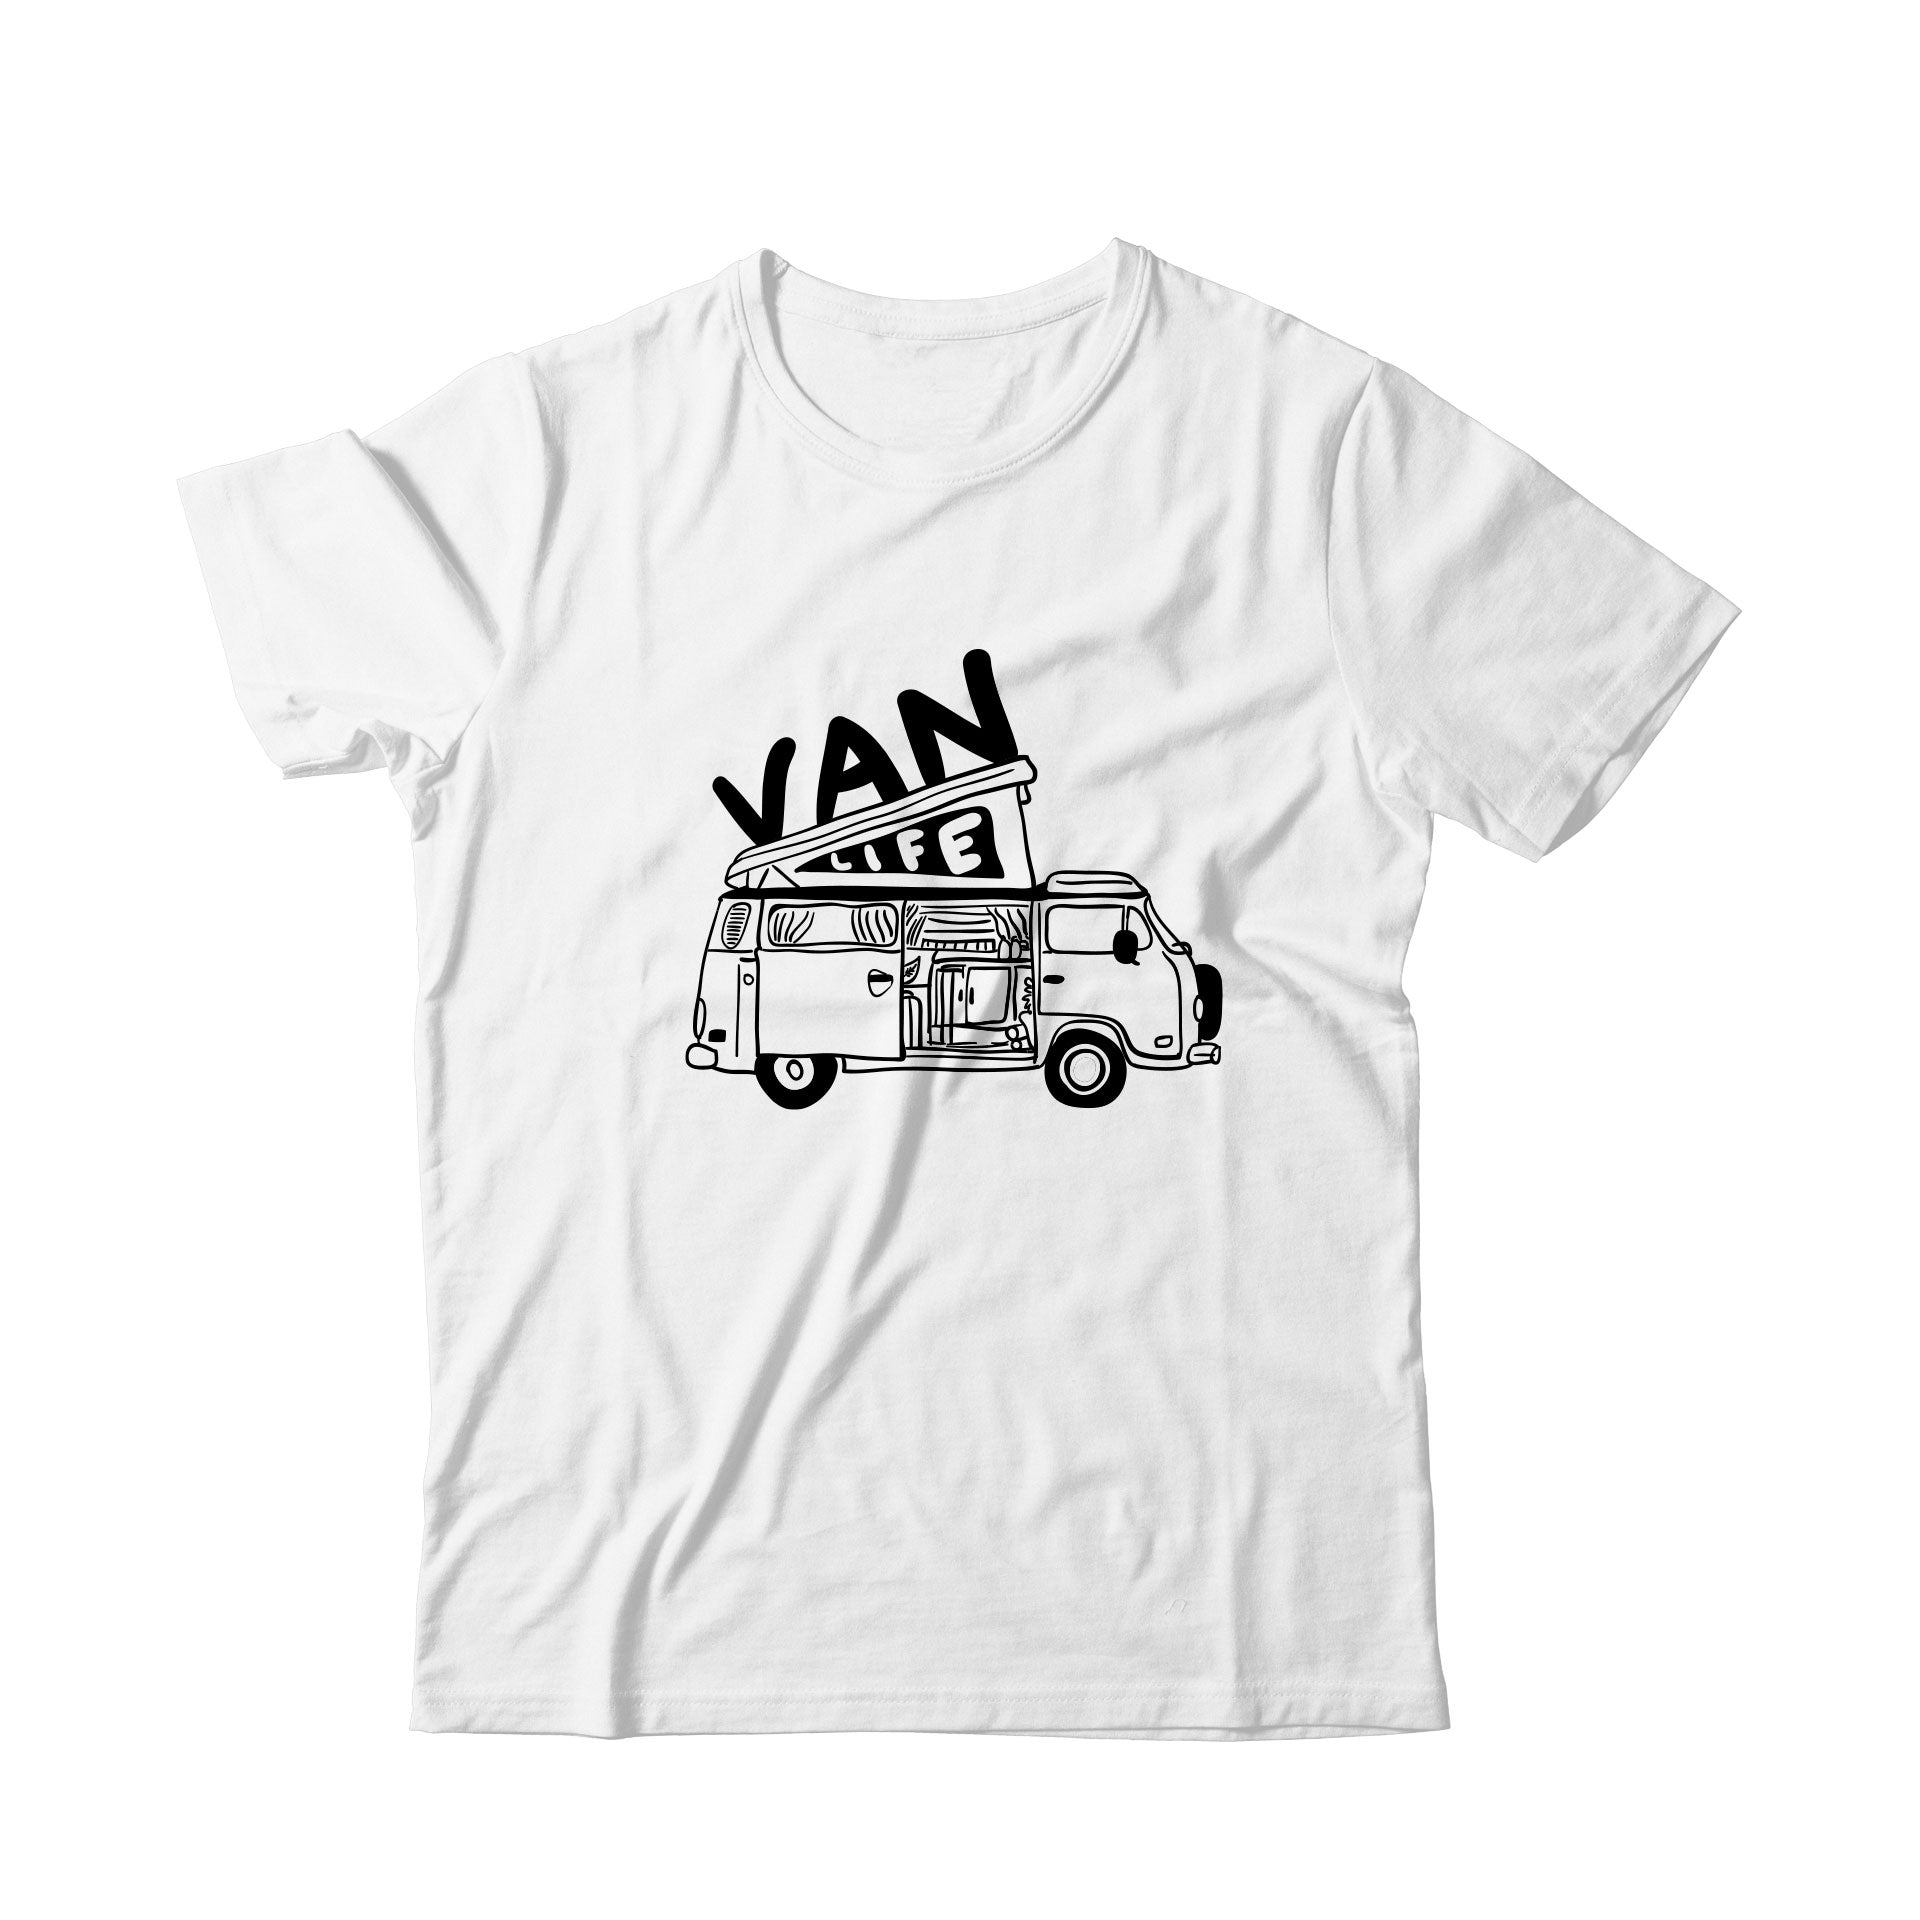 Van Life / Büyük Baskılı Tişört